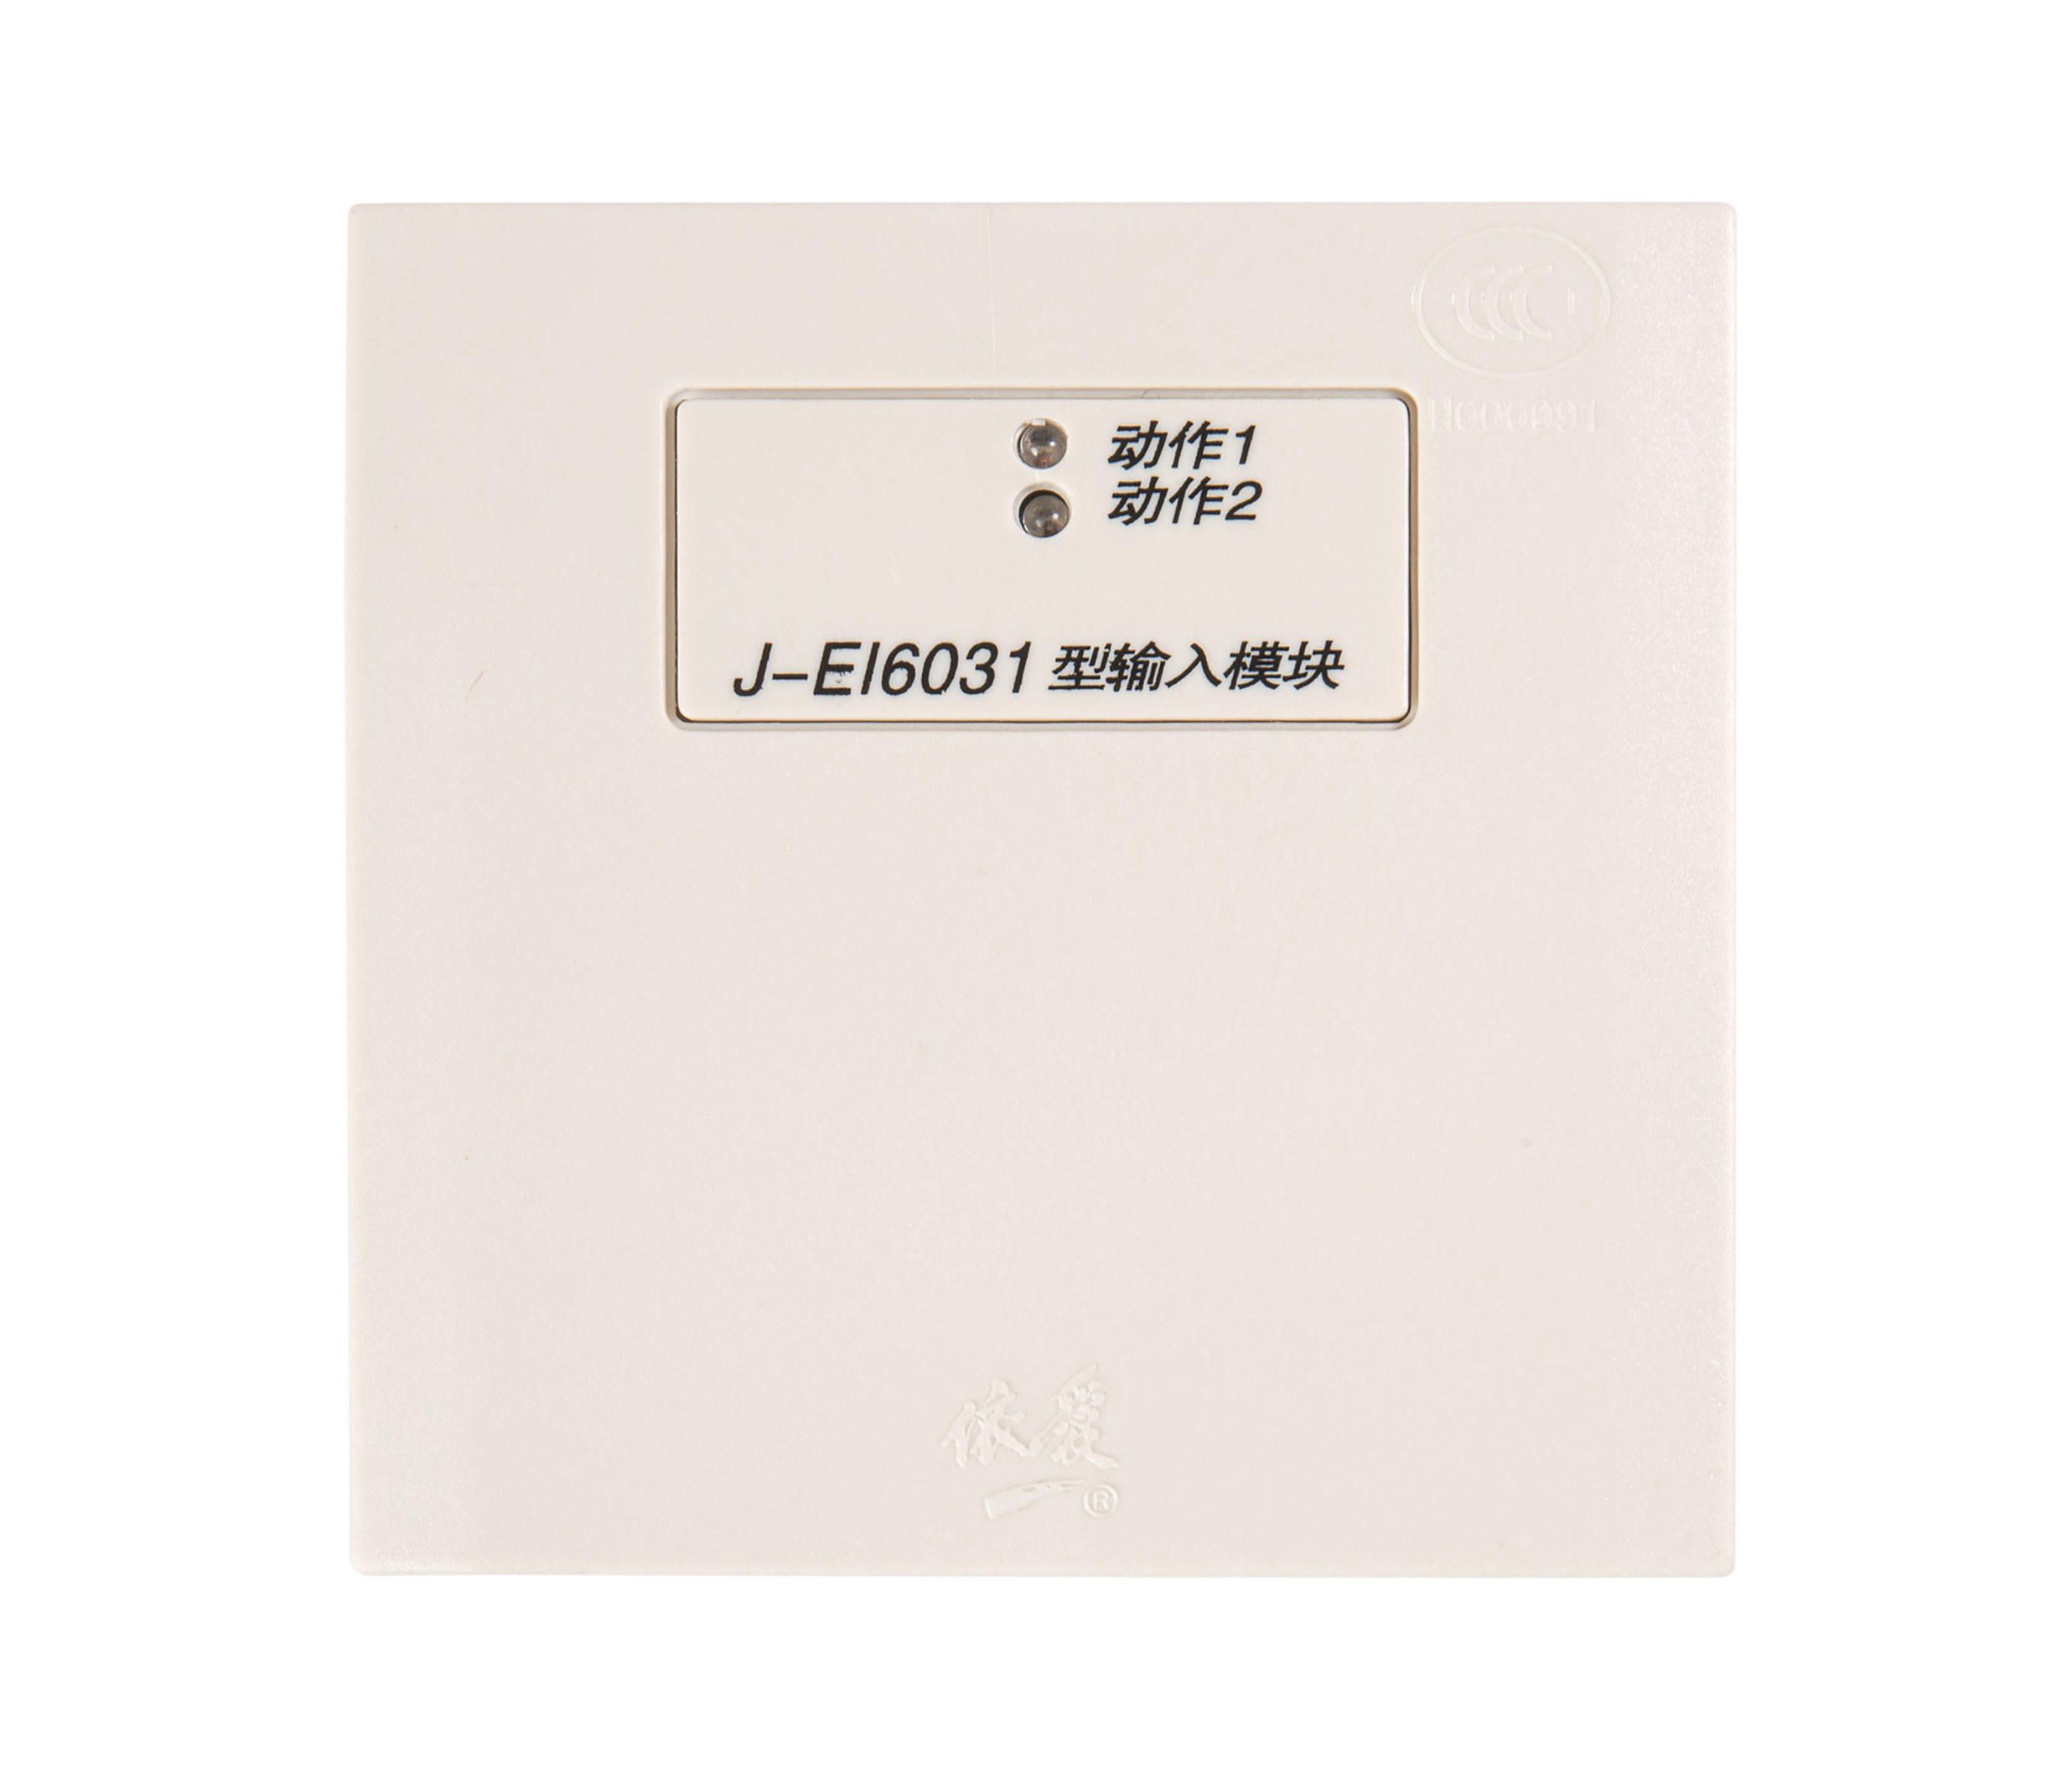 J-EI6031输入模块